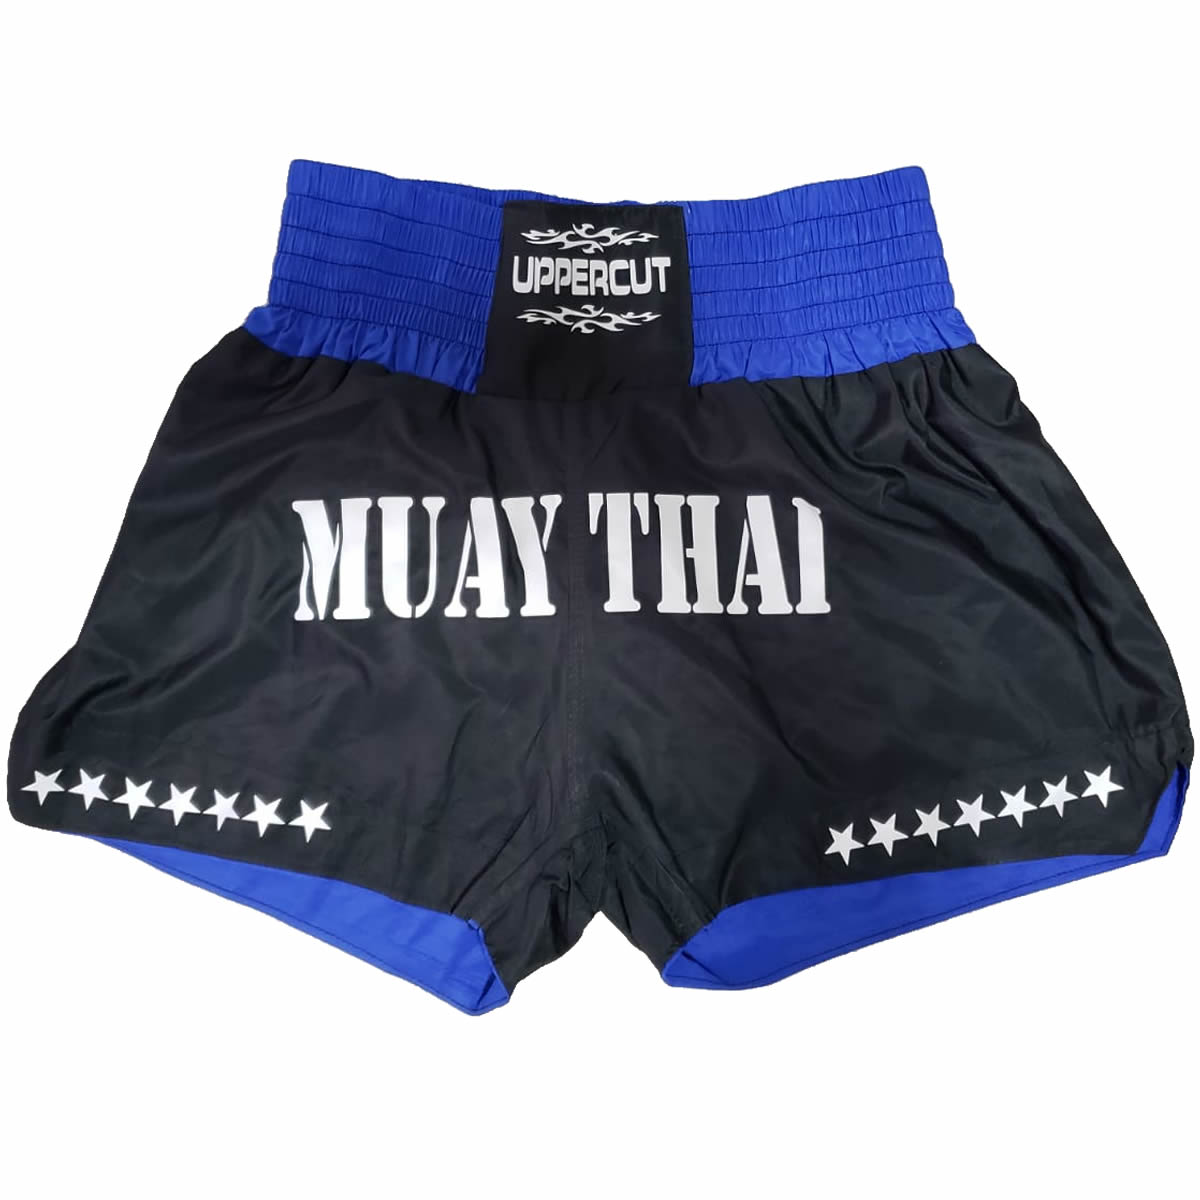 Calção Short Muay Thai Tradicional Star - Preto/Azul  - Loja do Competidor